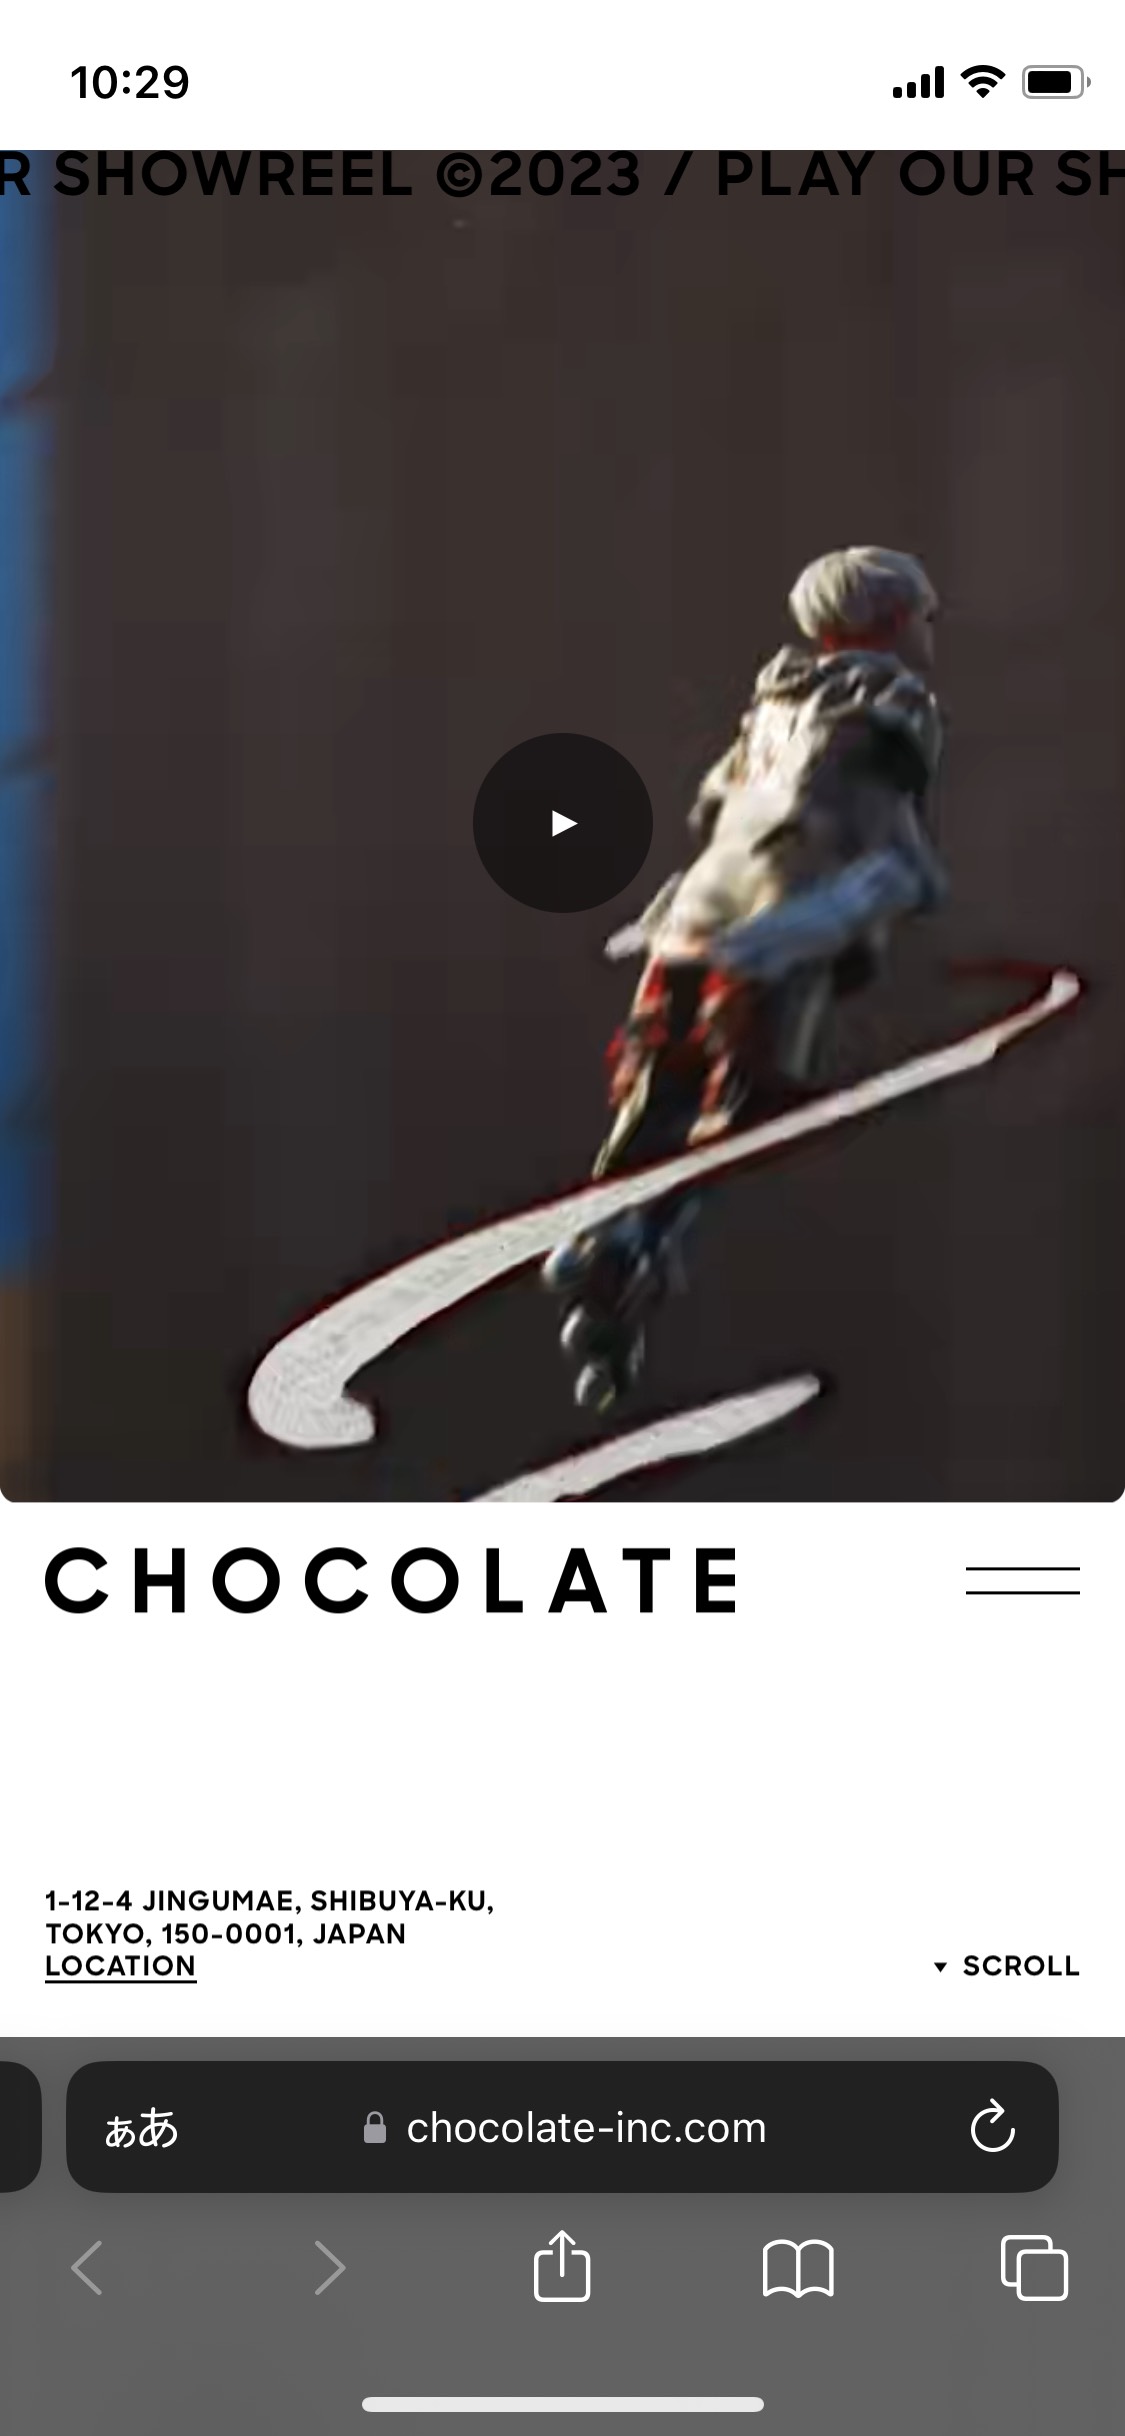 CHOCOLATE Inc.のサイト